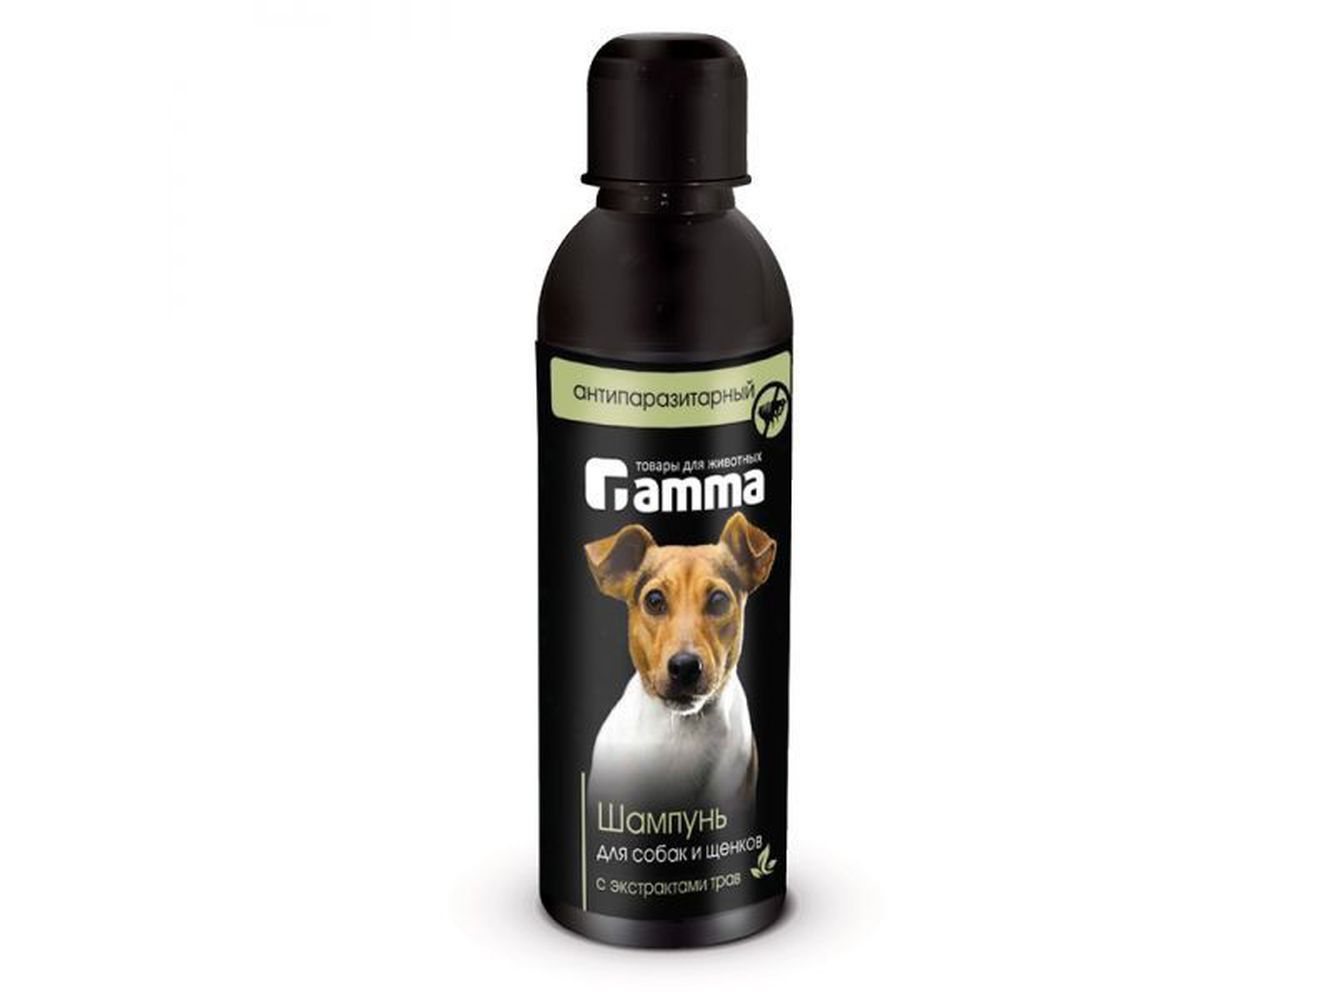 Фото Gamma шампунь для собак и щенков антипаразитарный с экстрактом трав, 250 мл 